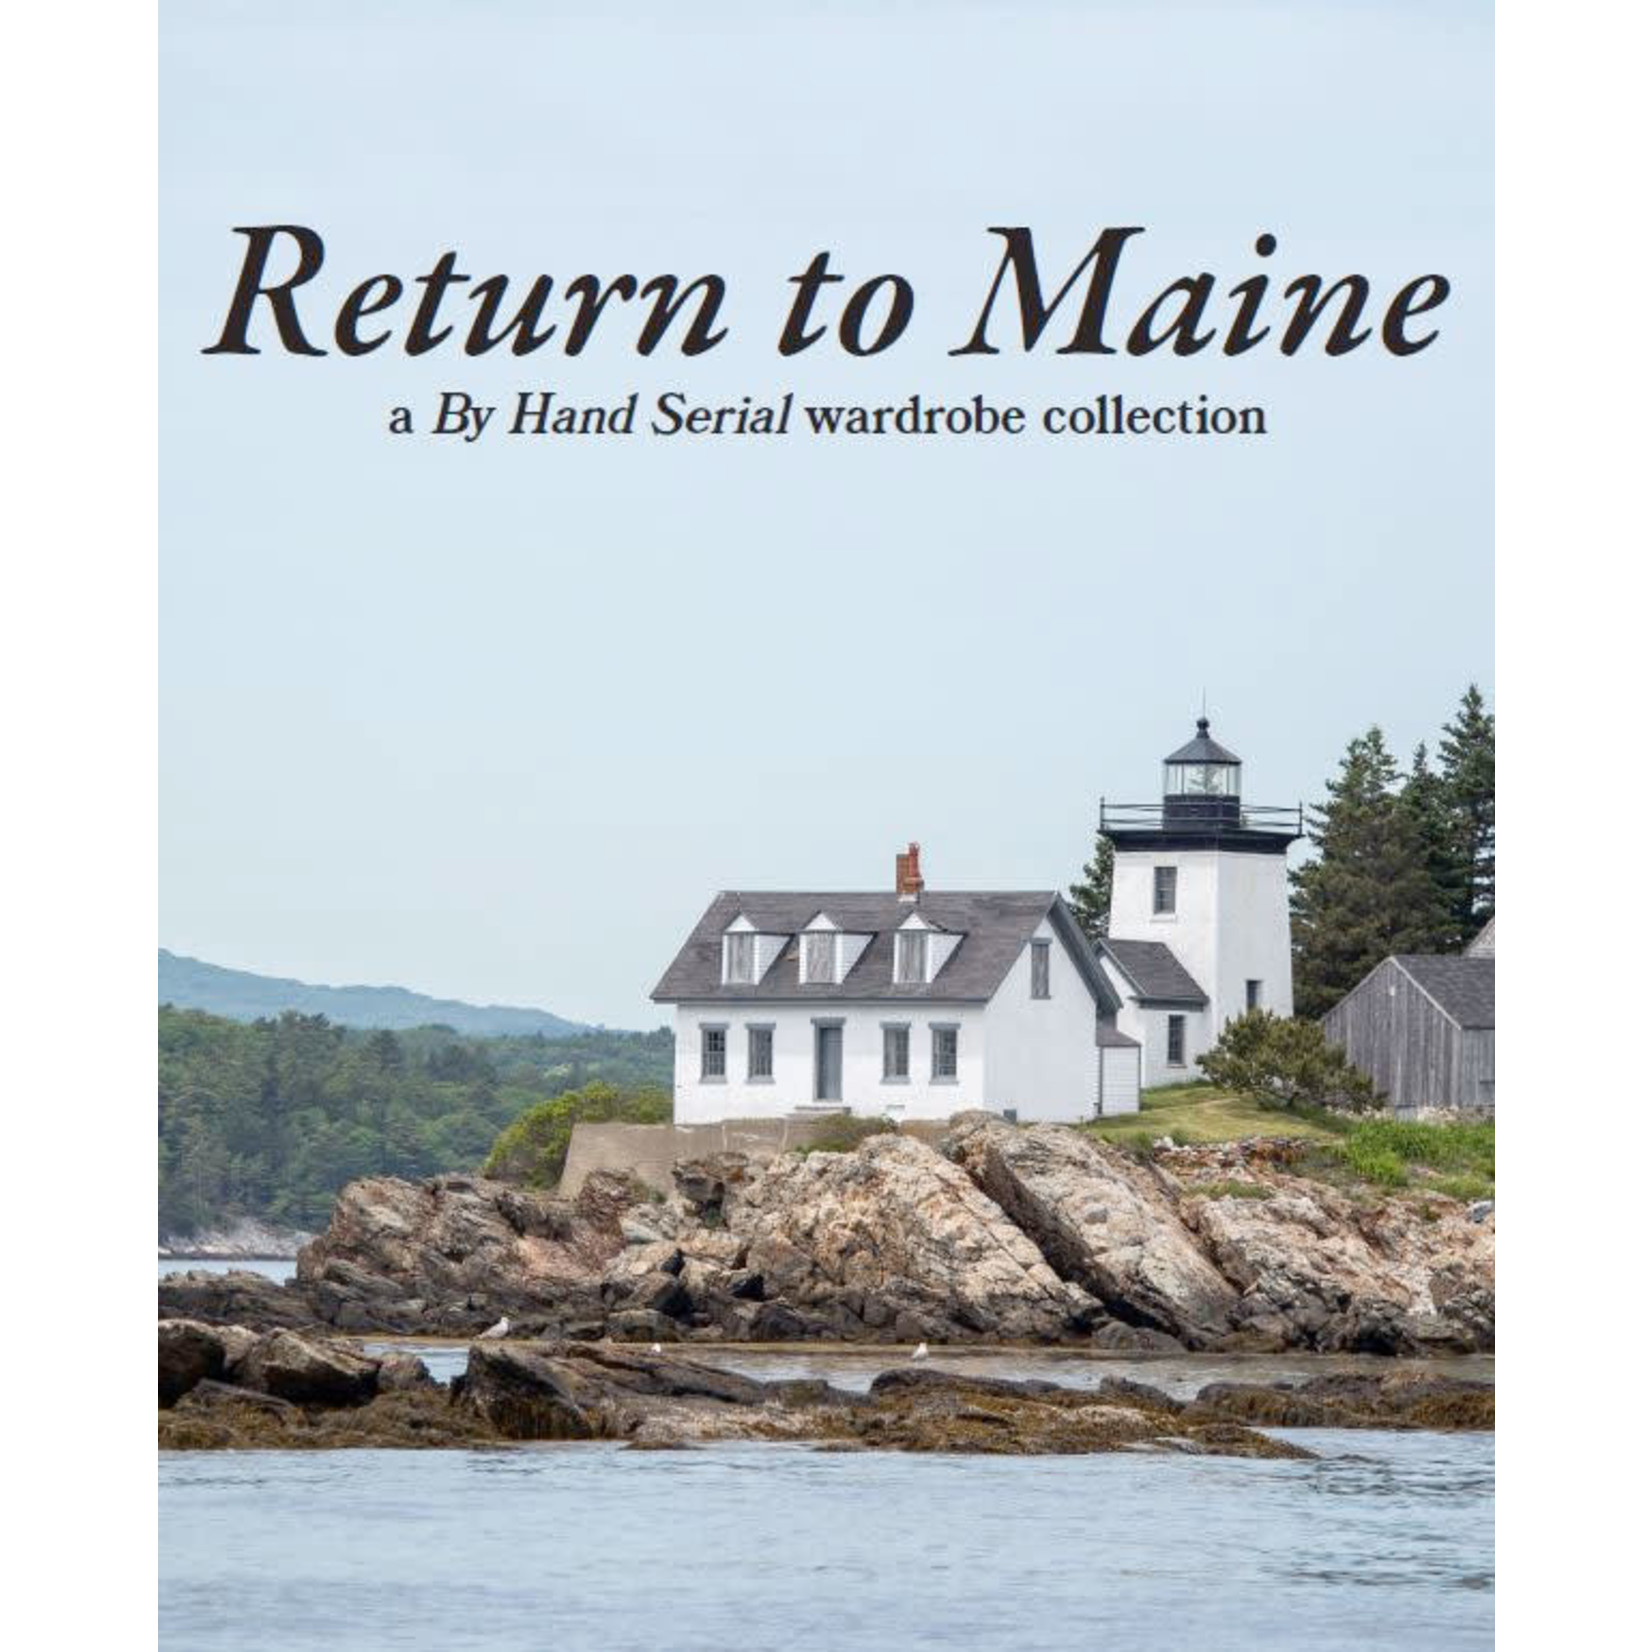 Return to Maine